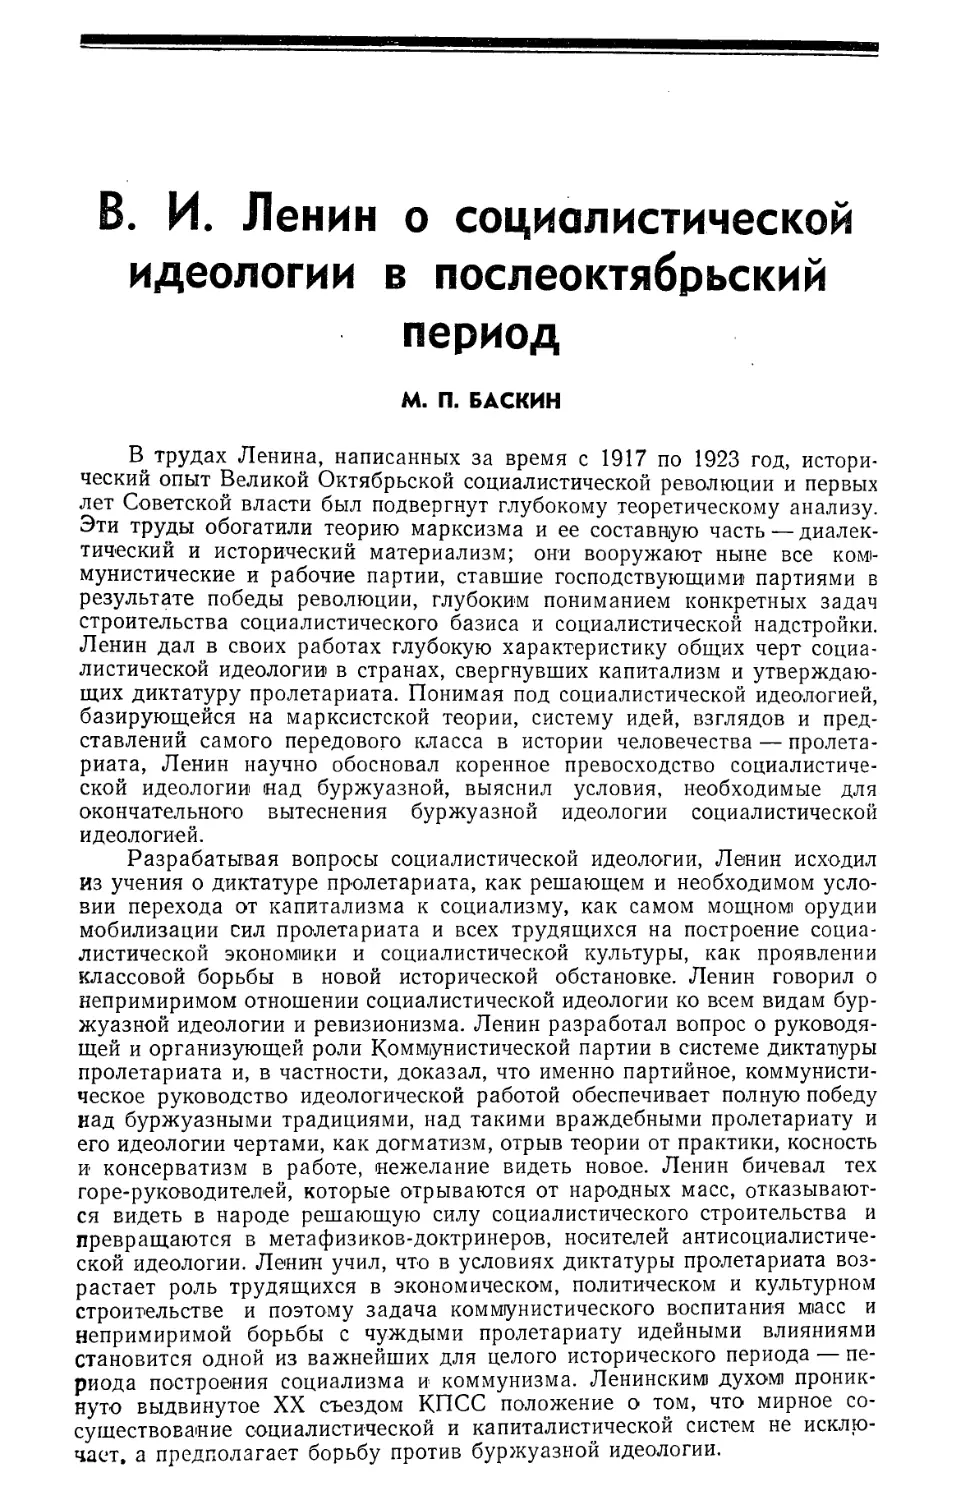 М. П. Баскин — В. И. Ленин о социалистической идеологии в послеоктябрьский период